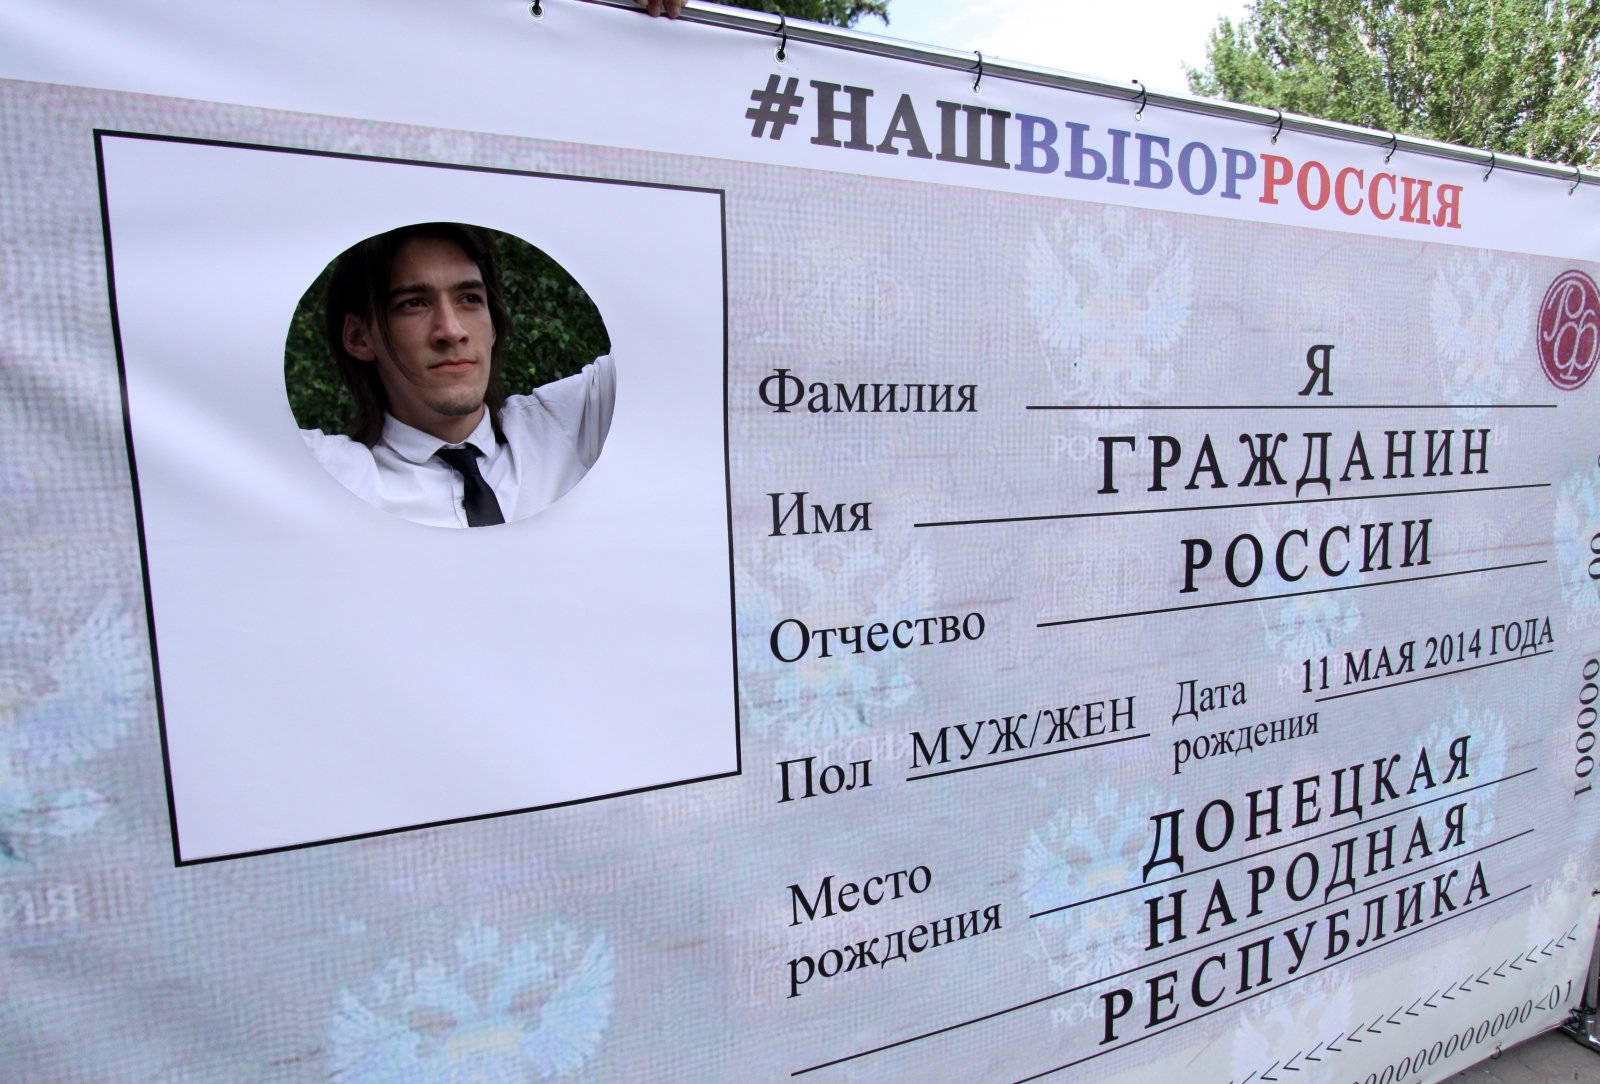 Желающих получить российский паспорт пугают нечистой силой